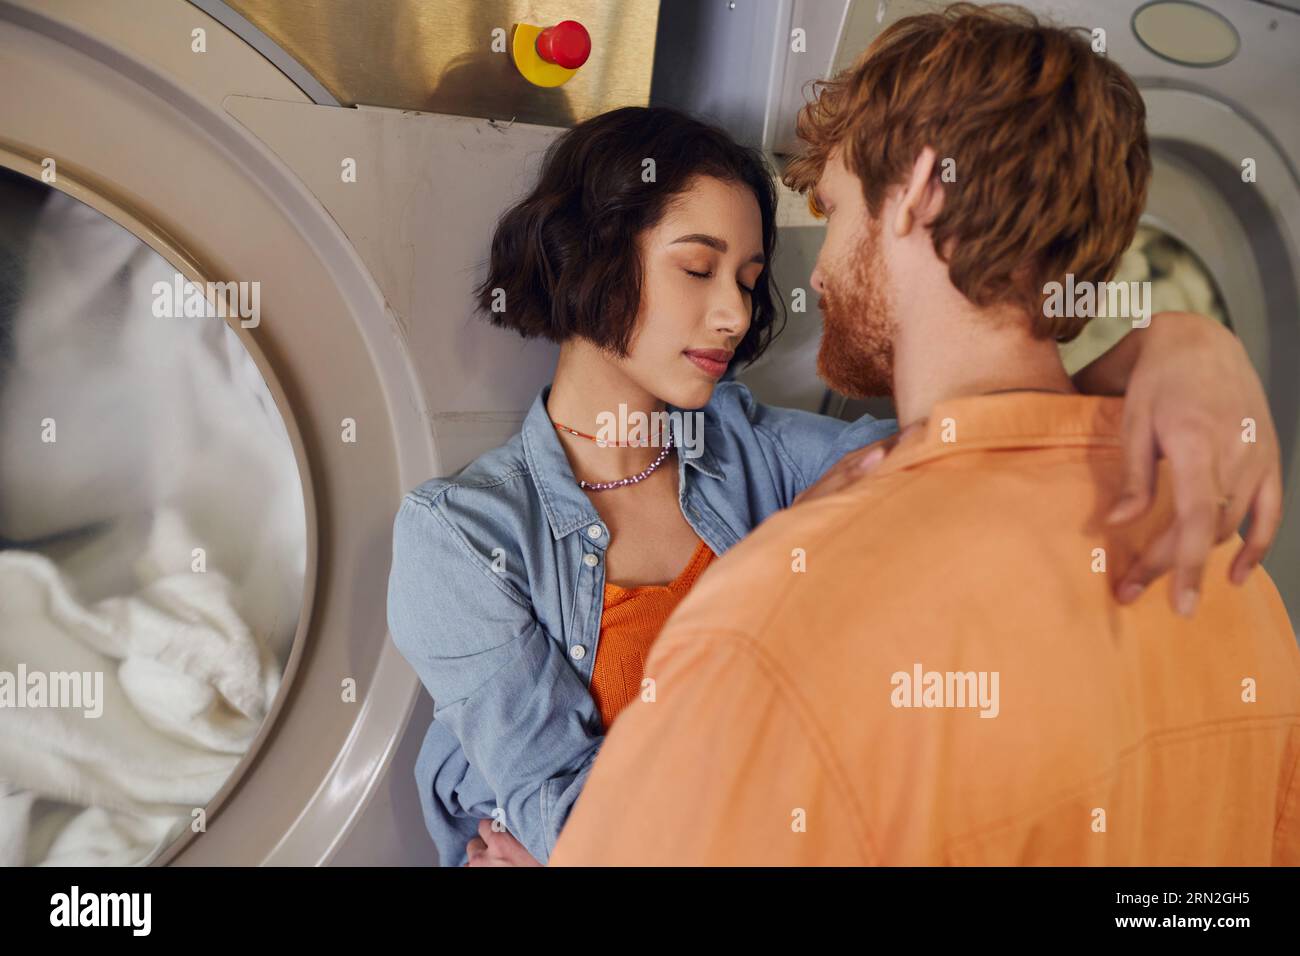 romantique jeune femme asiatique serrant copain rousse près de la machine à laver dans la blanchisserie publique Banque D'Images